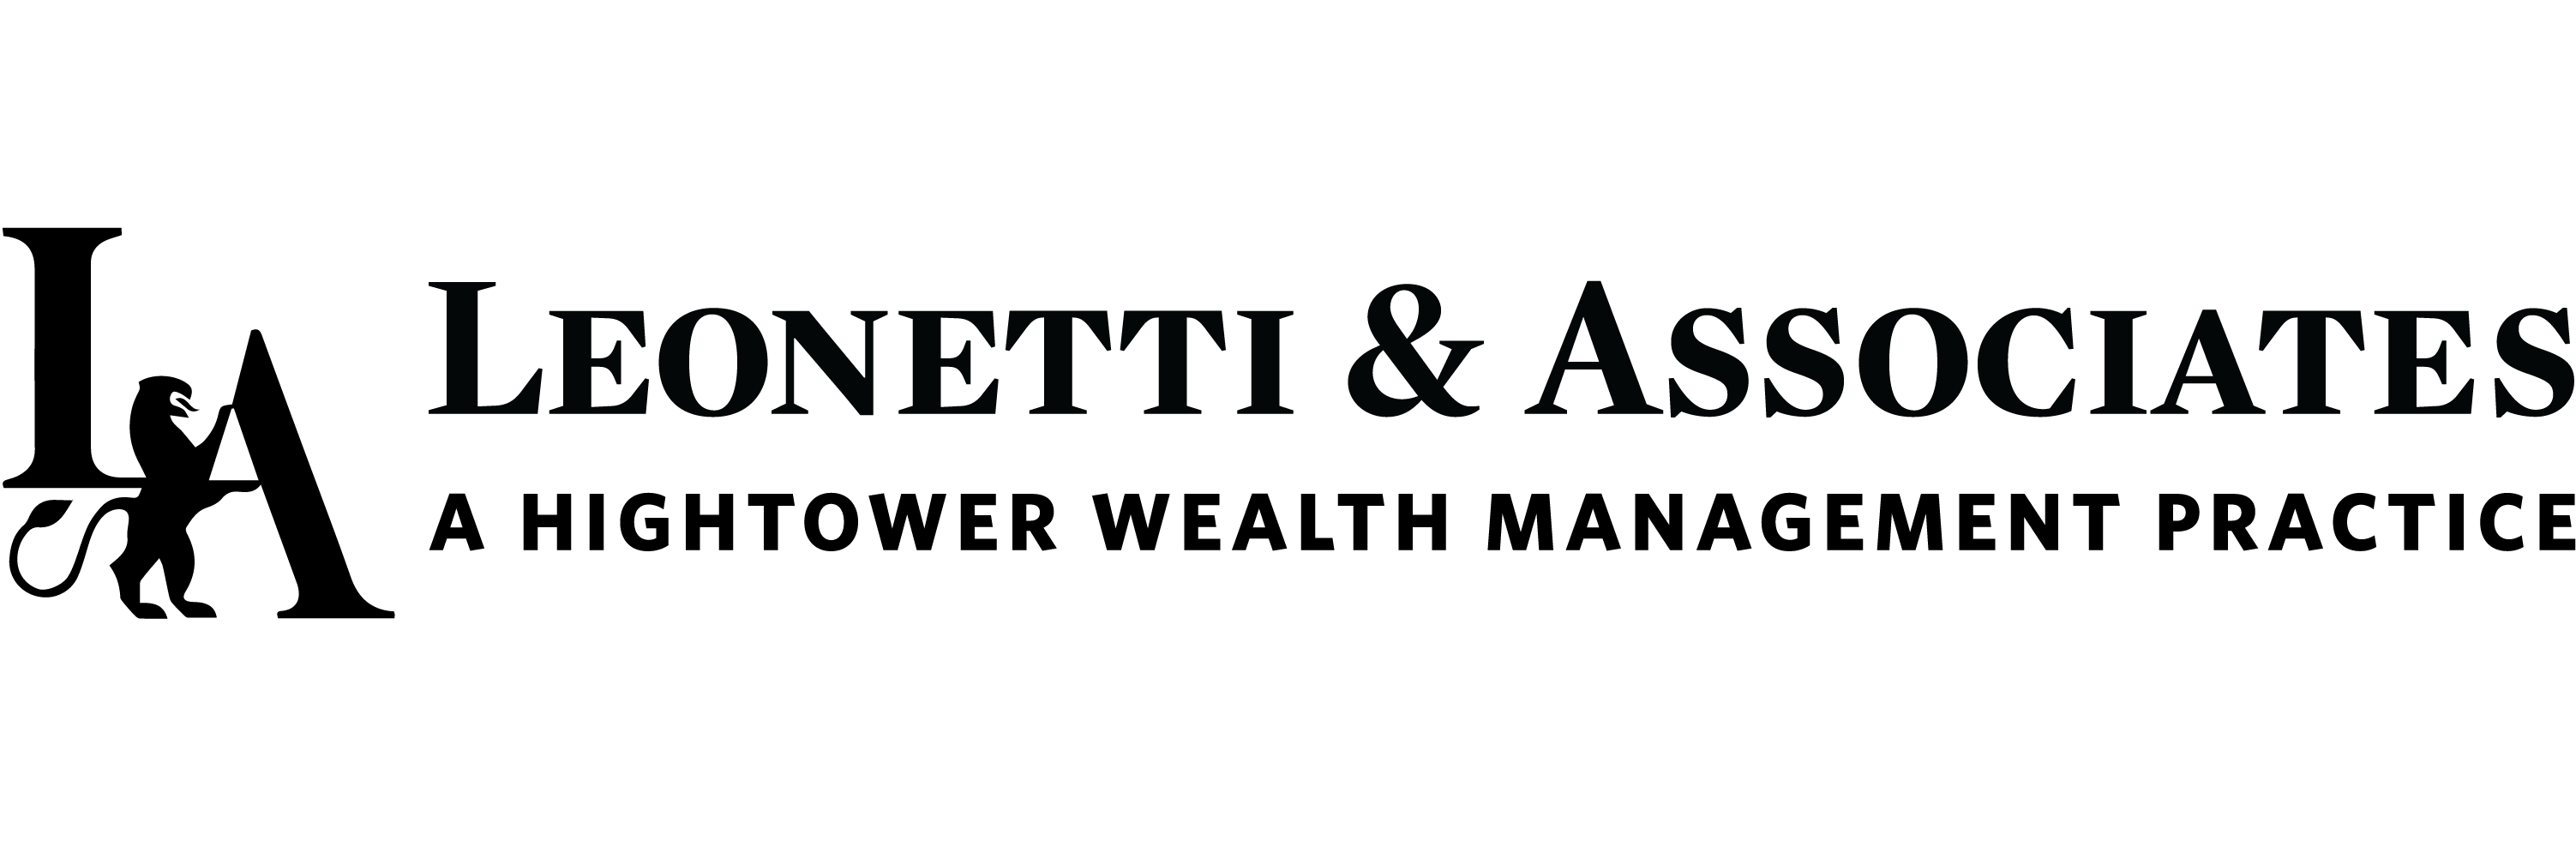 Hightower Logo - Leonetti & Associates A HighTower Wealth Management Firm